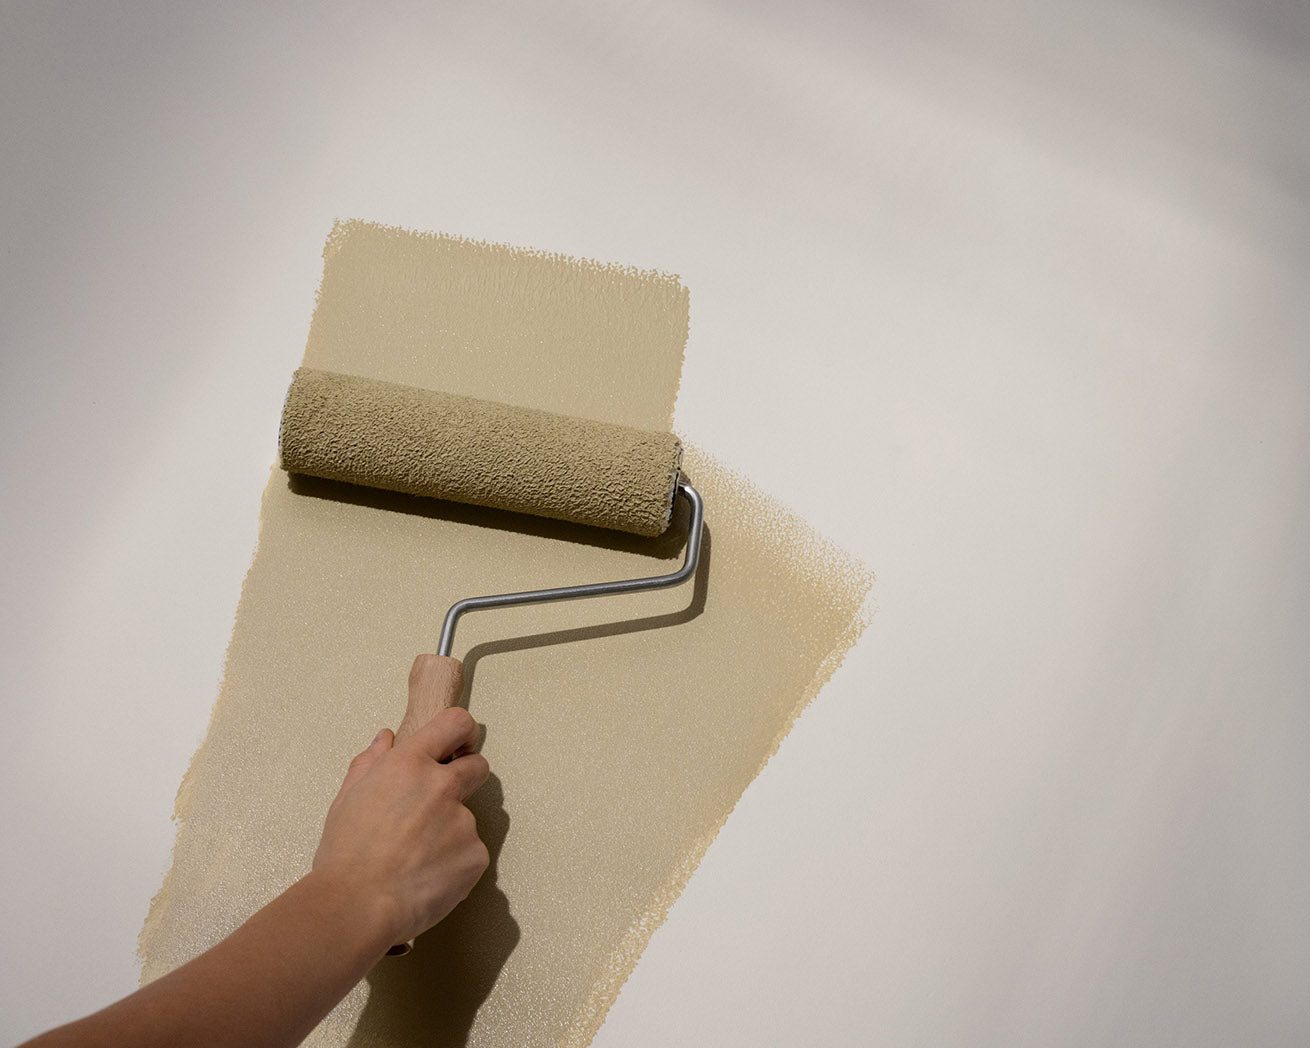 Så här målar du väggarna hemma – proffsens tips